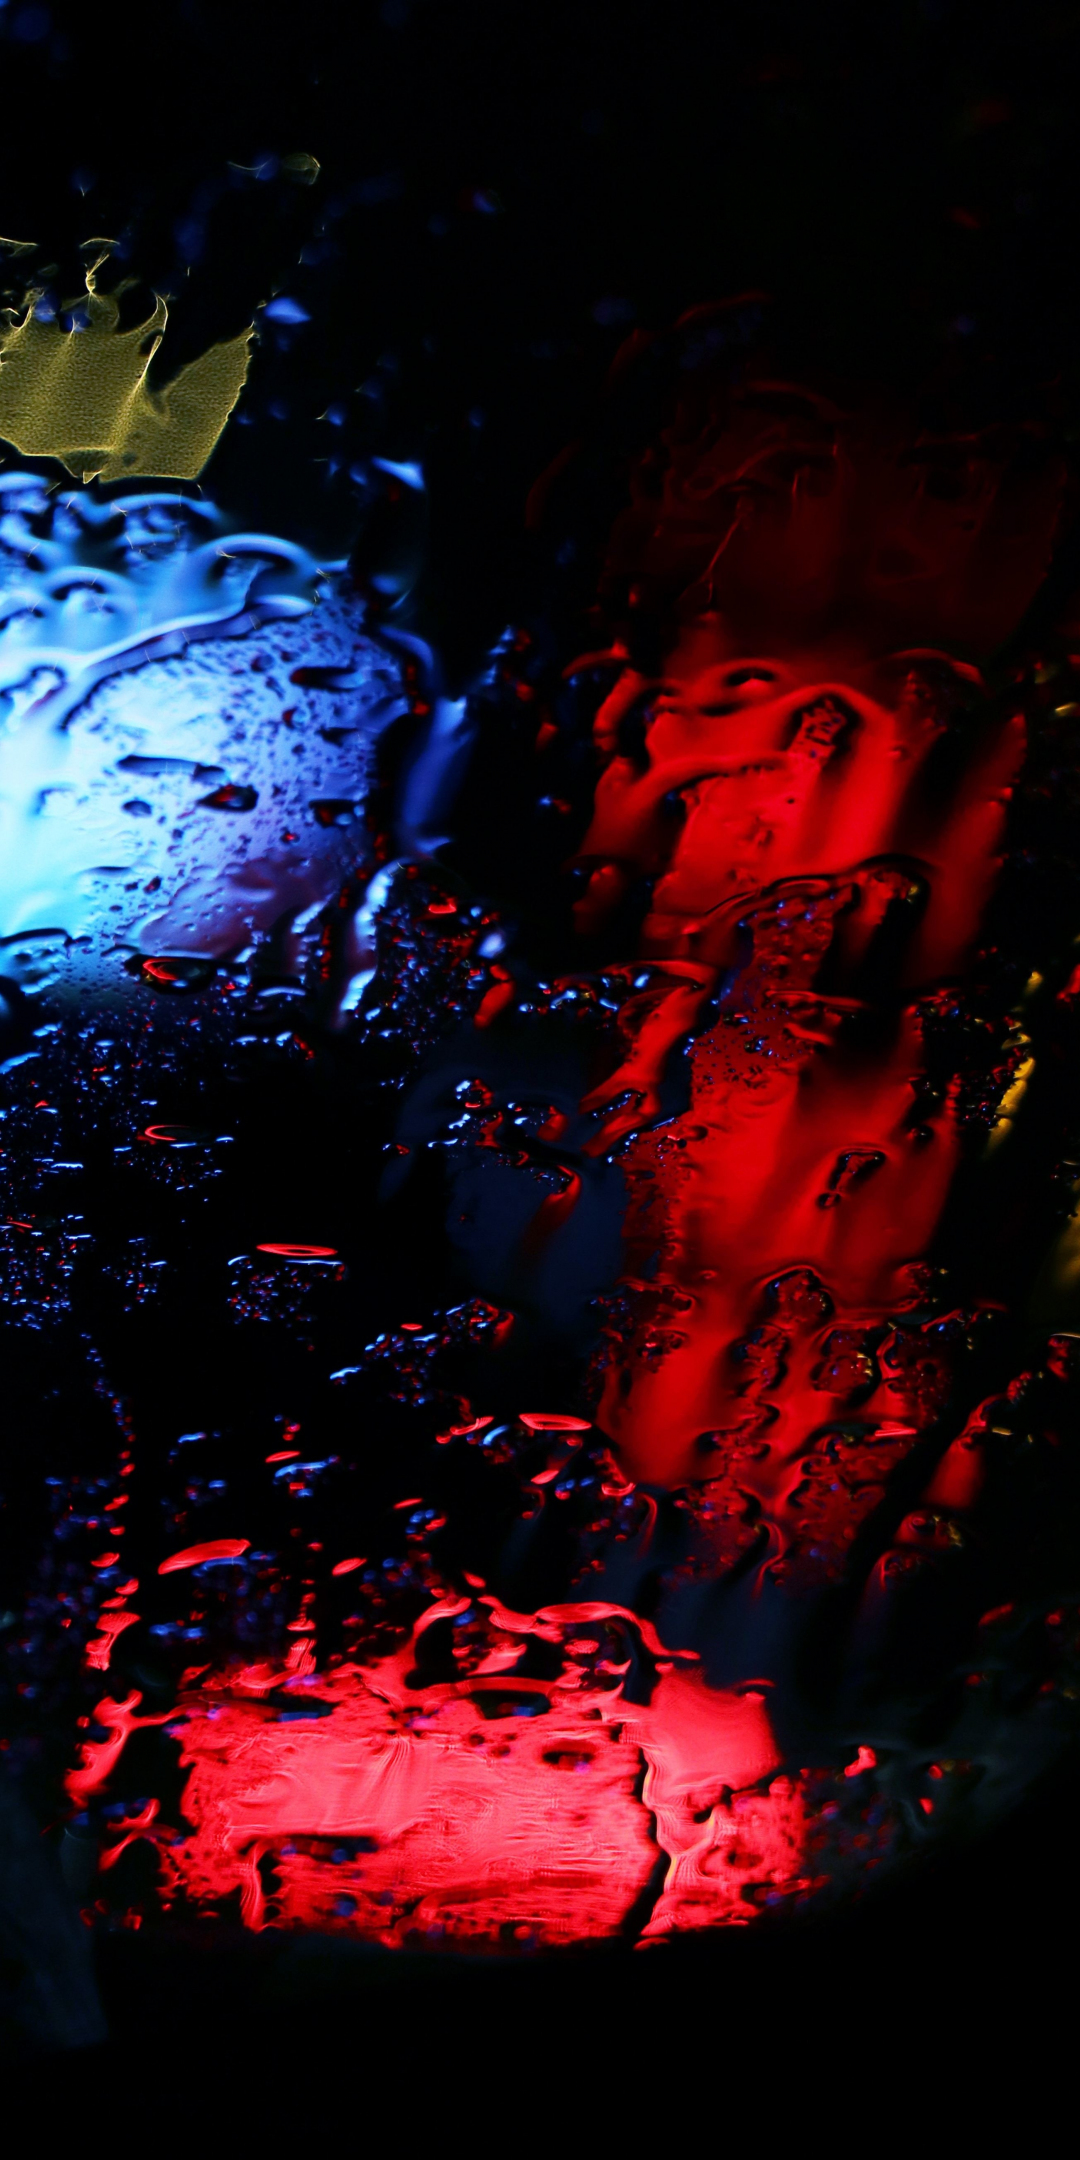 Blur, lights, glass surface, 1080x2160 wallpaper